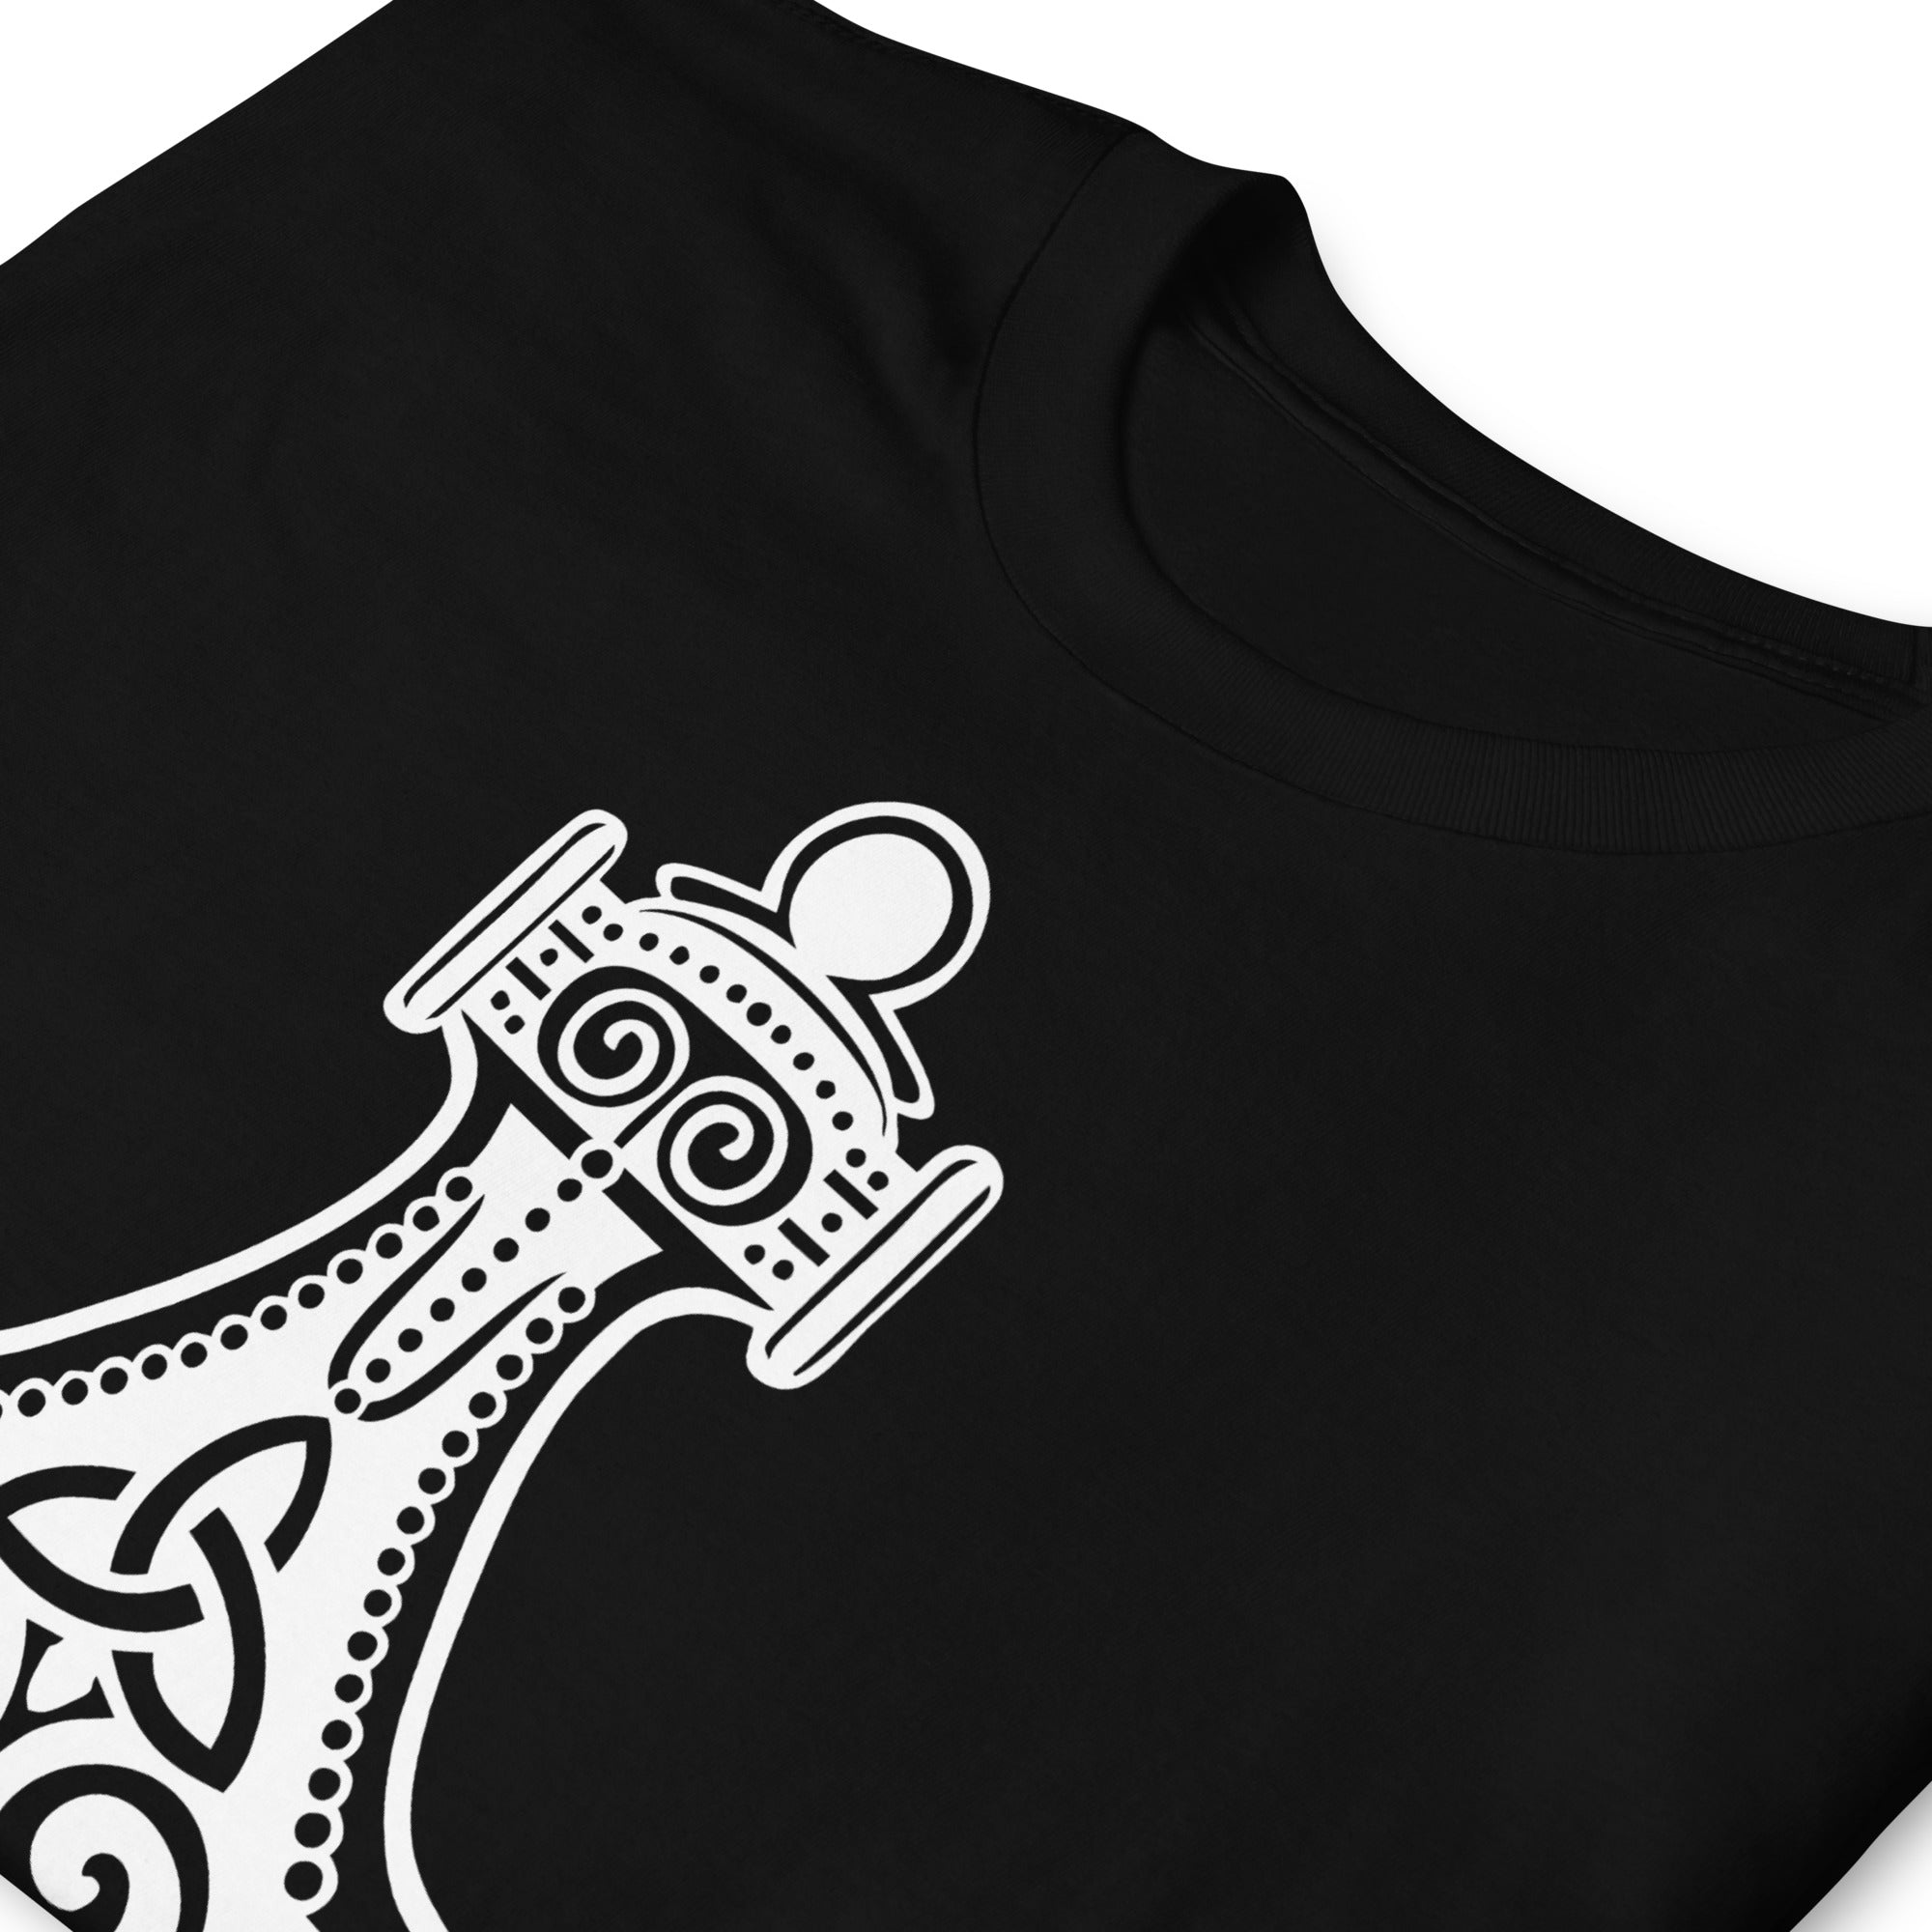 Thor's Hammer Mjolnir Norse Mythology Men's Short-Sleeve T-Shirt White Print - Edge of Life Designs